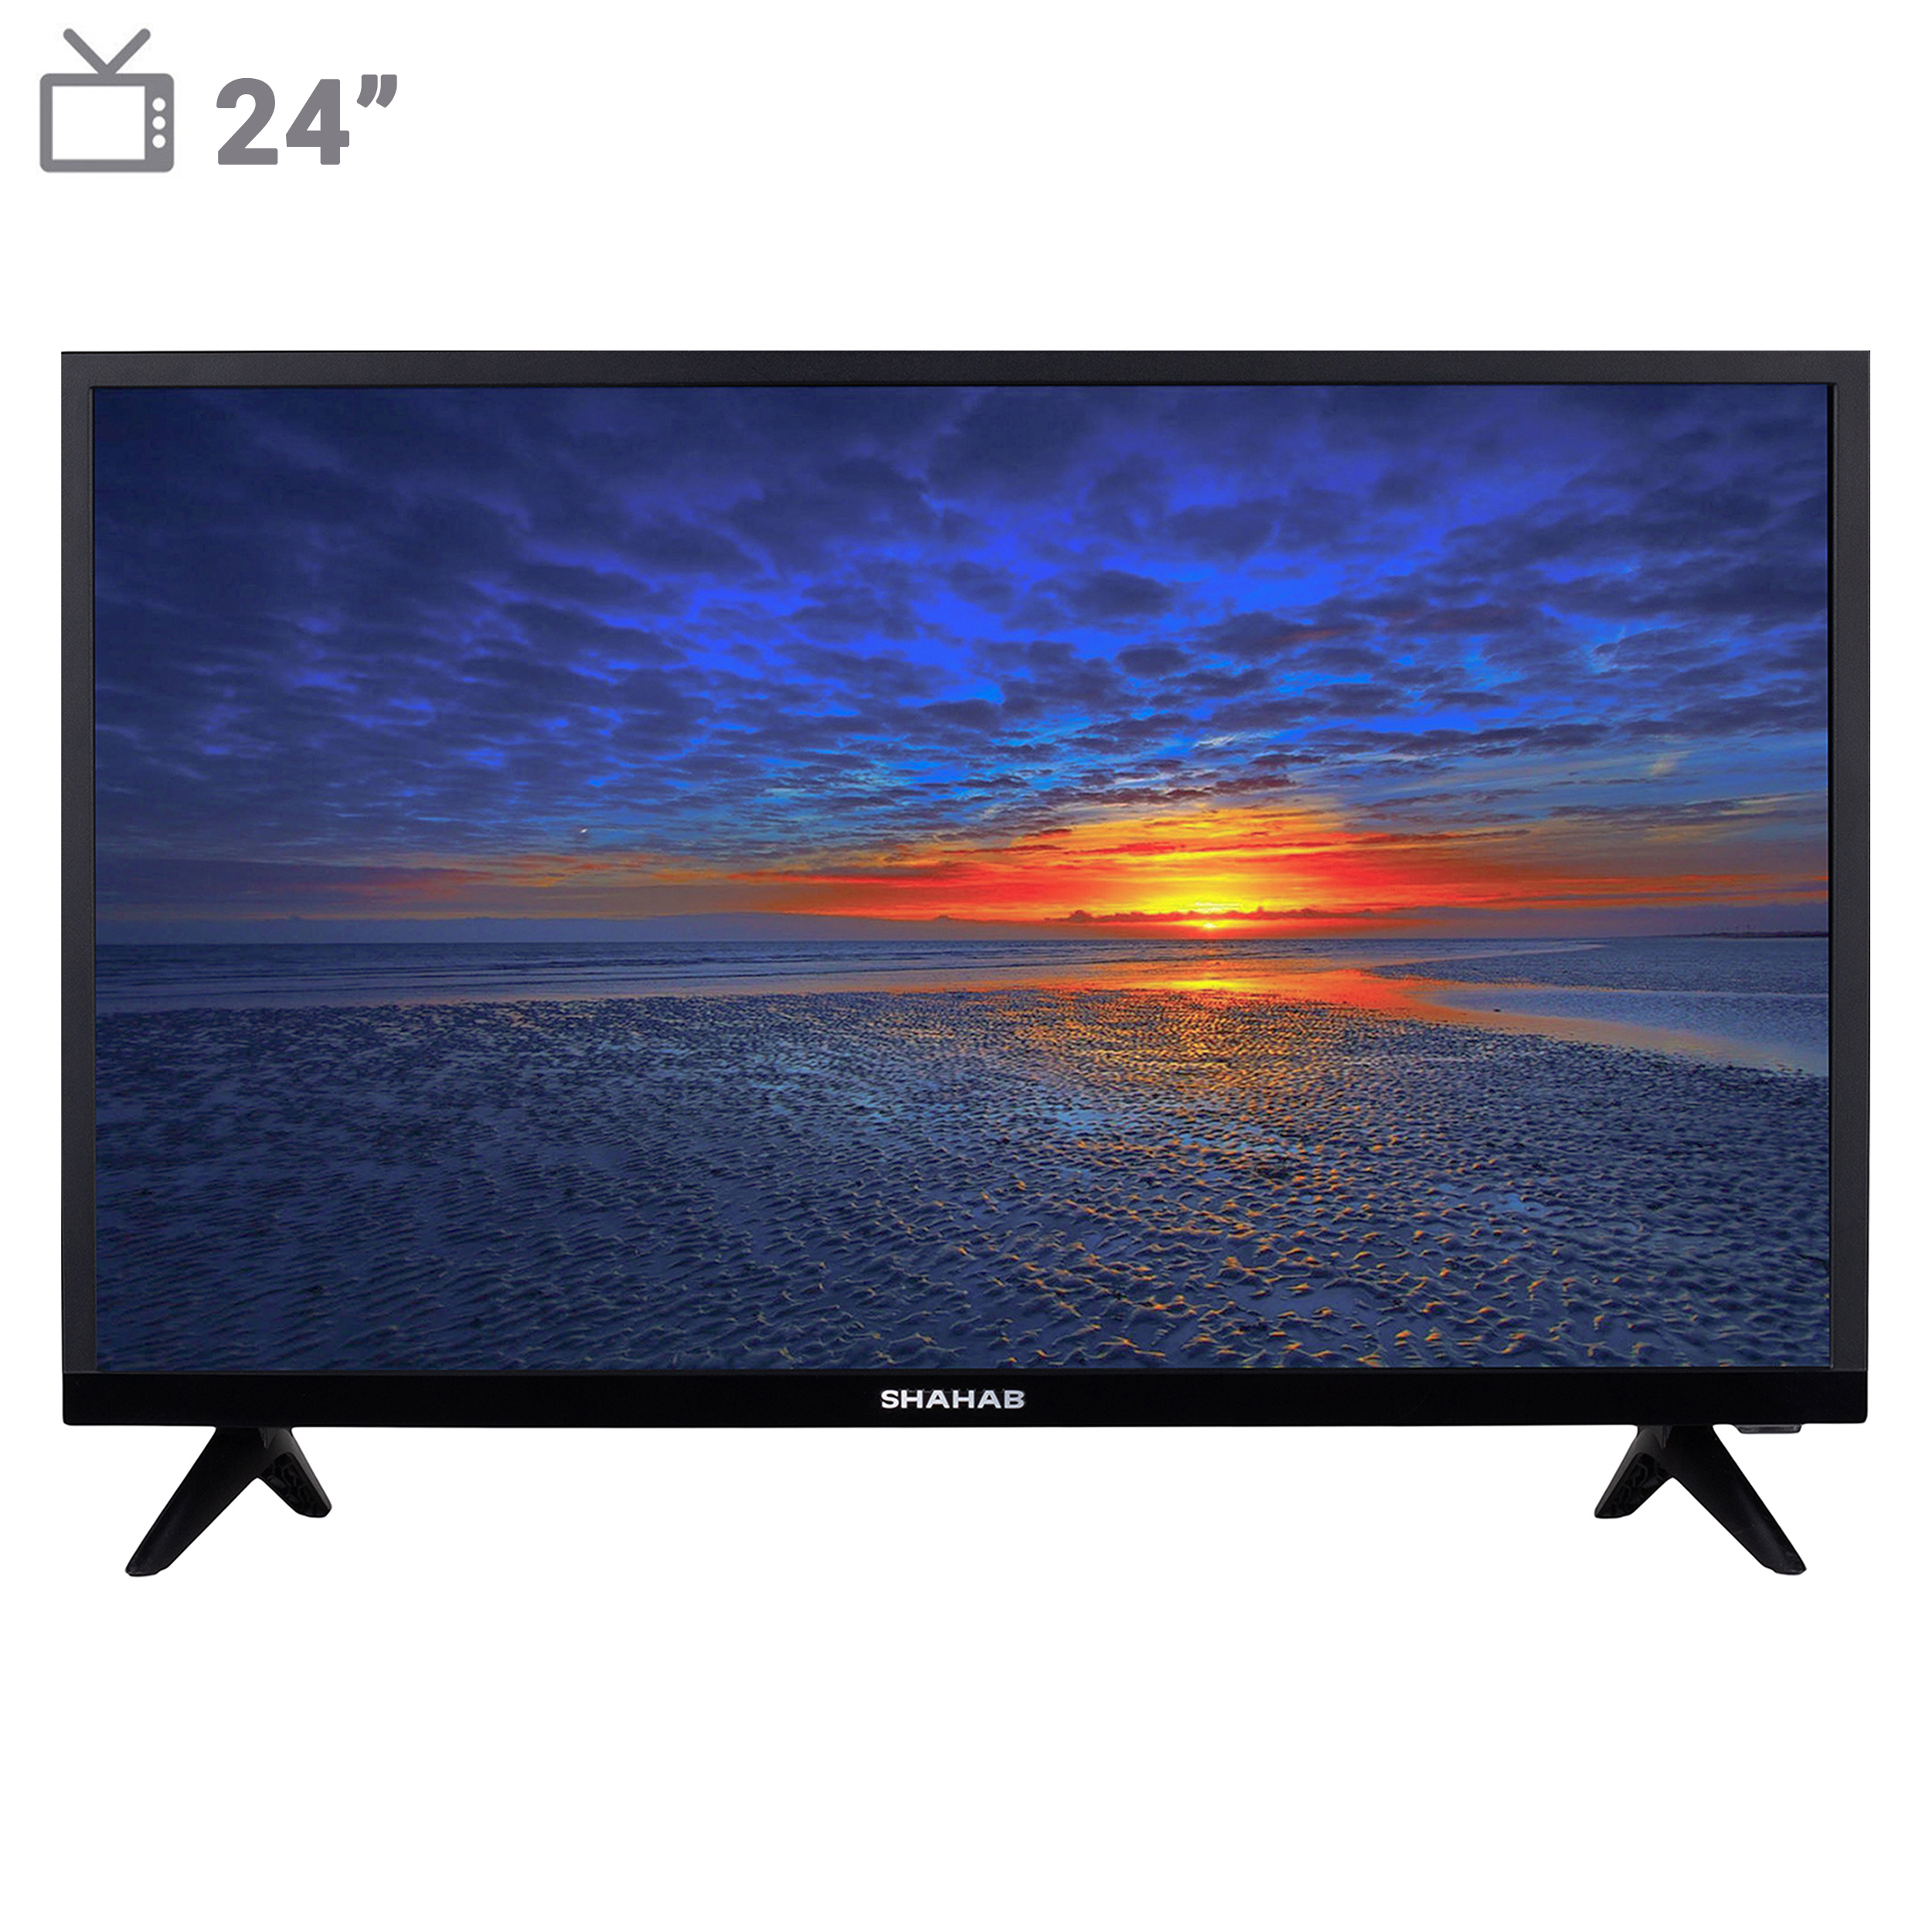 نکته خرید - قیمت روز تلویزیون ال ای دی شهاب مدل LED24SH203N1 سایز 24 اینچ خرید